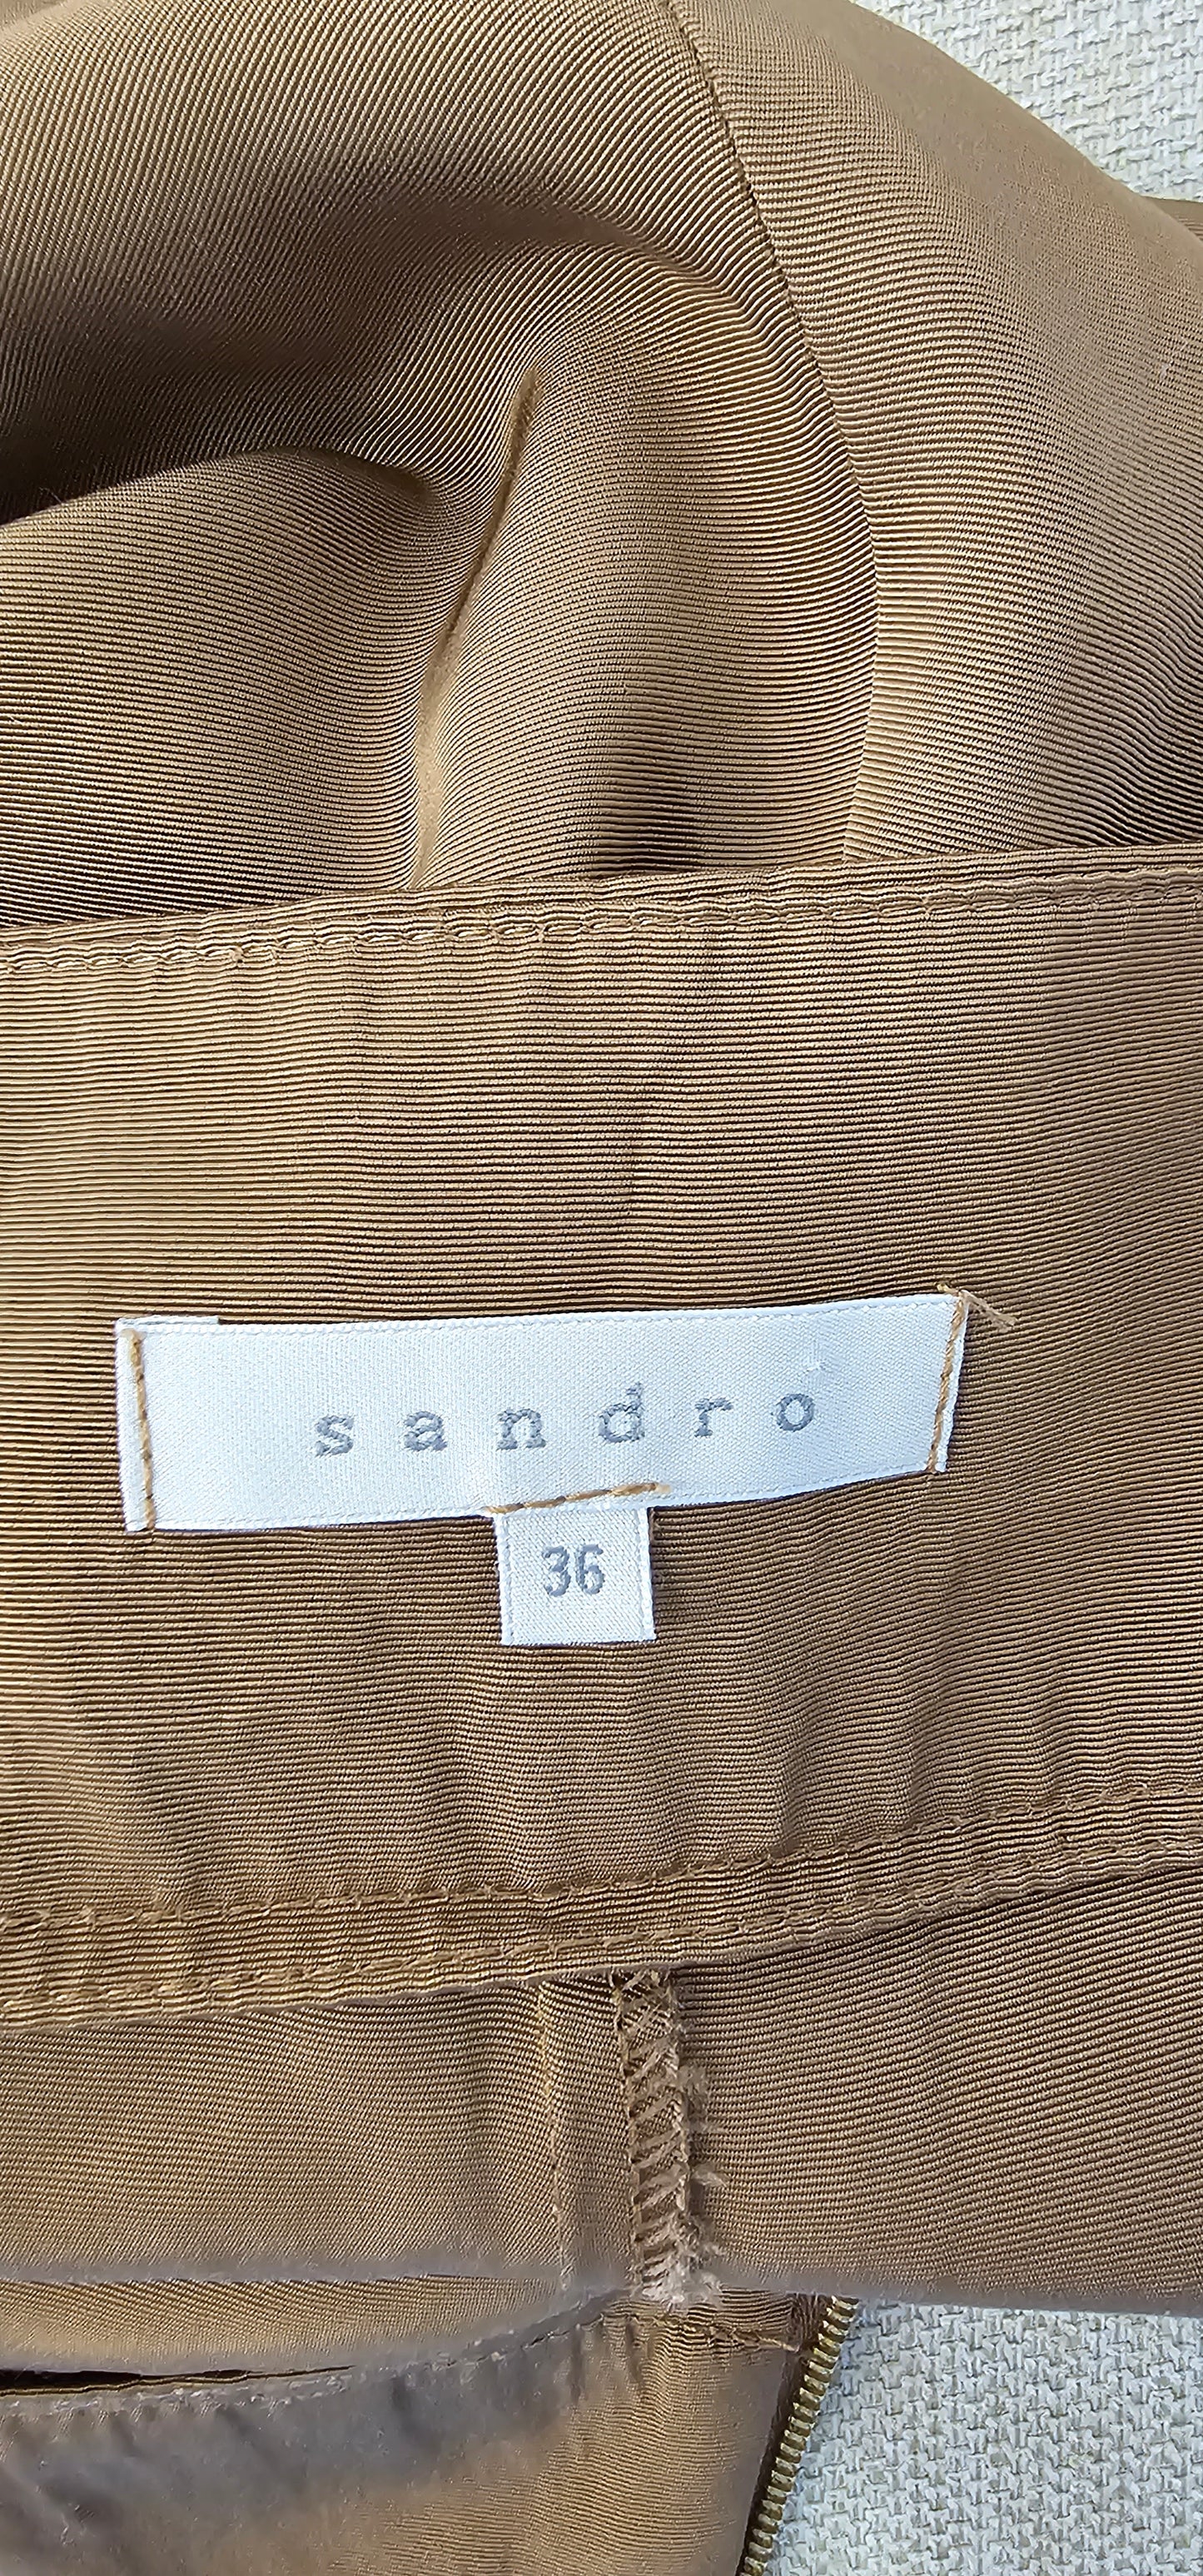 Short Sandro